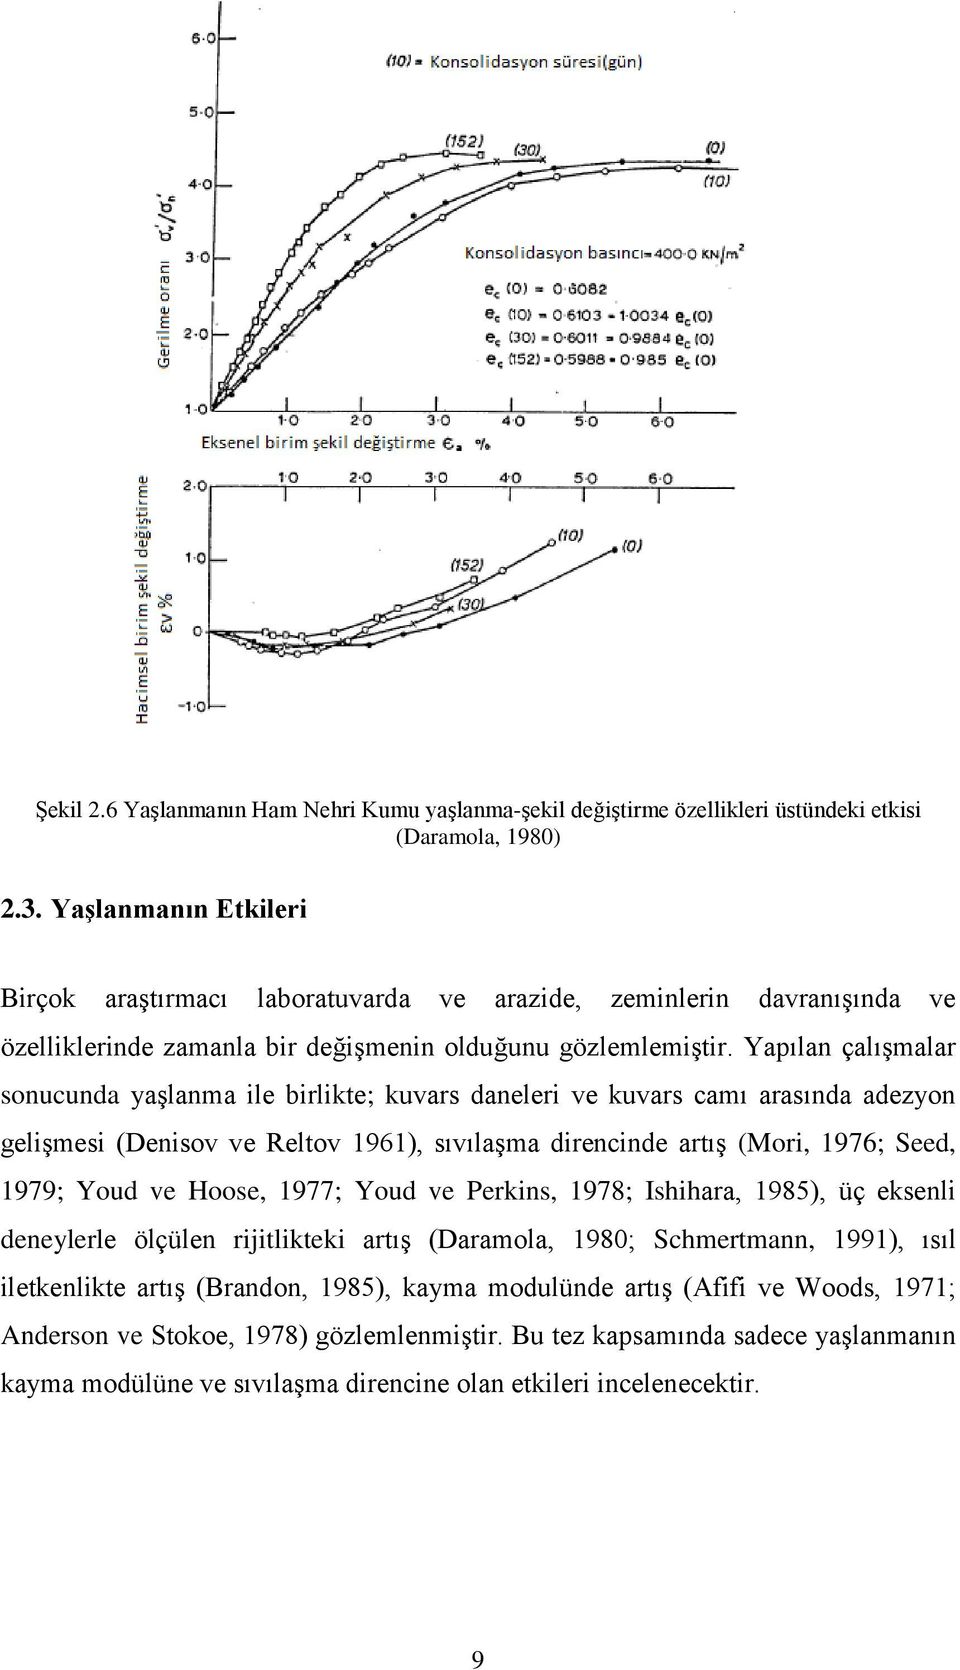 Yapılan çalışmalar sonucunda yaşlanma ile birlikte; kuvars daneleri ve kuvars camı arasında adezyon gelişmesi (Denisov ve Reltov 1961), sıvılaşma direncinde artış (Mori, 1976; Seed, 1979; Youd ve